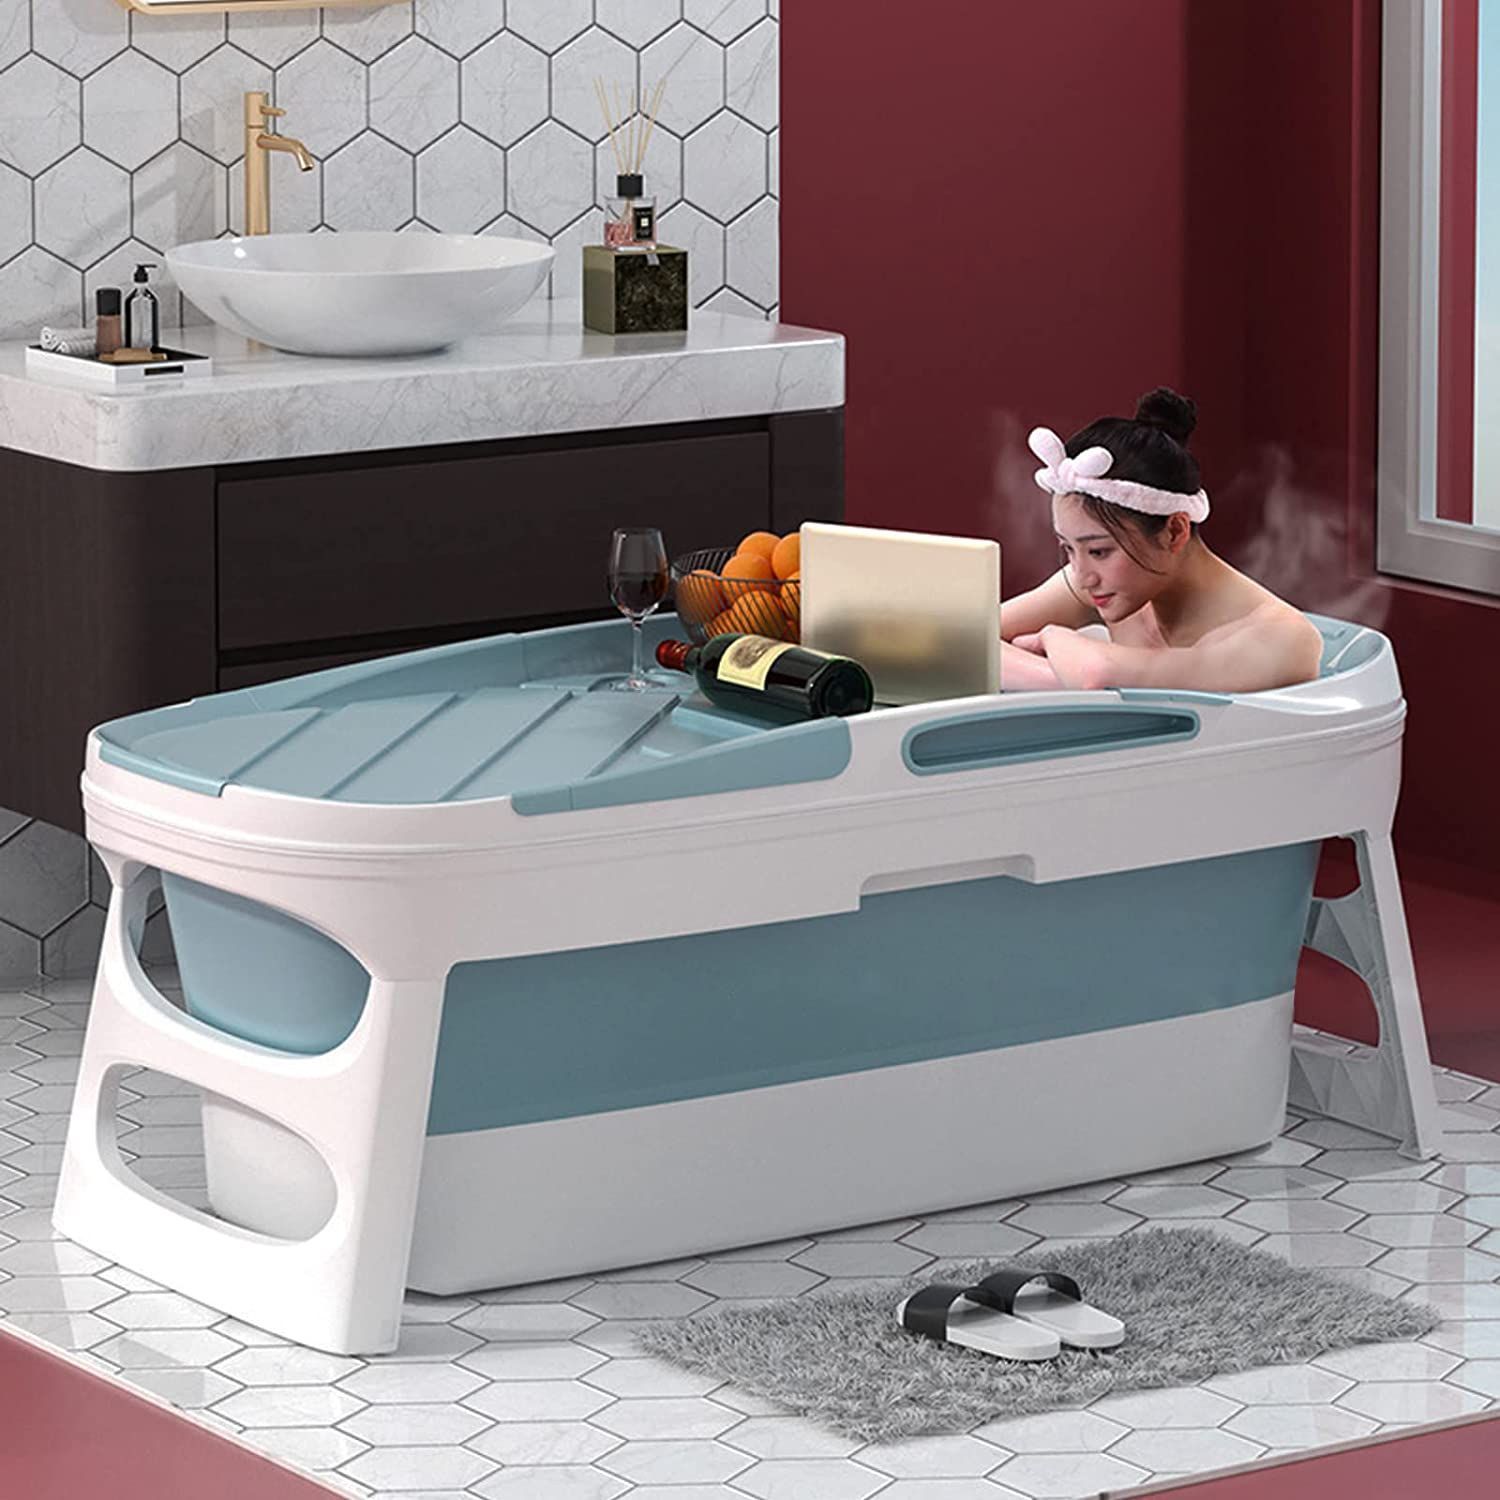 ポータブルバスタブ 浴槽 簡易浴槽 ポータブル バスタブ 折りたたみ 収納 コンパクト 5層構造 保温 お風呂桶 家庭用 お風呂 直径70cm 高さ6  最大86%OFFクーポン - 浴室、浴槽、洗面所